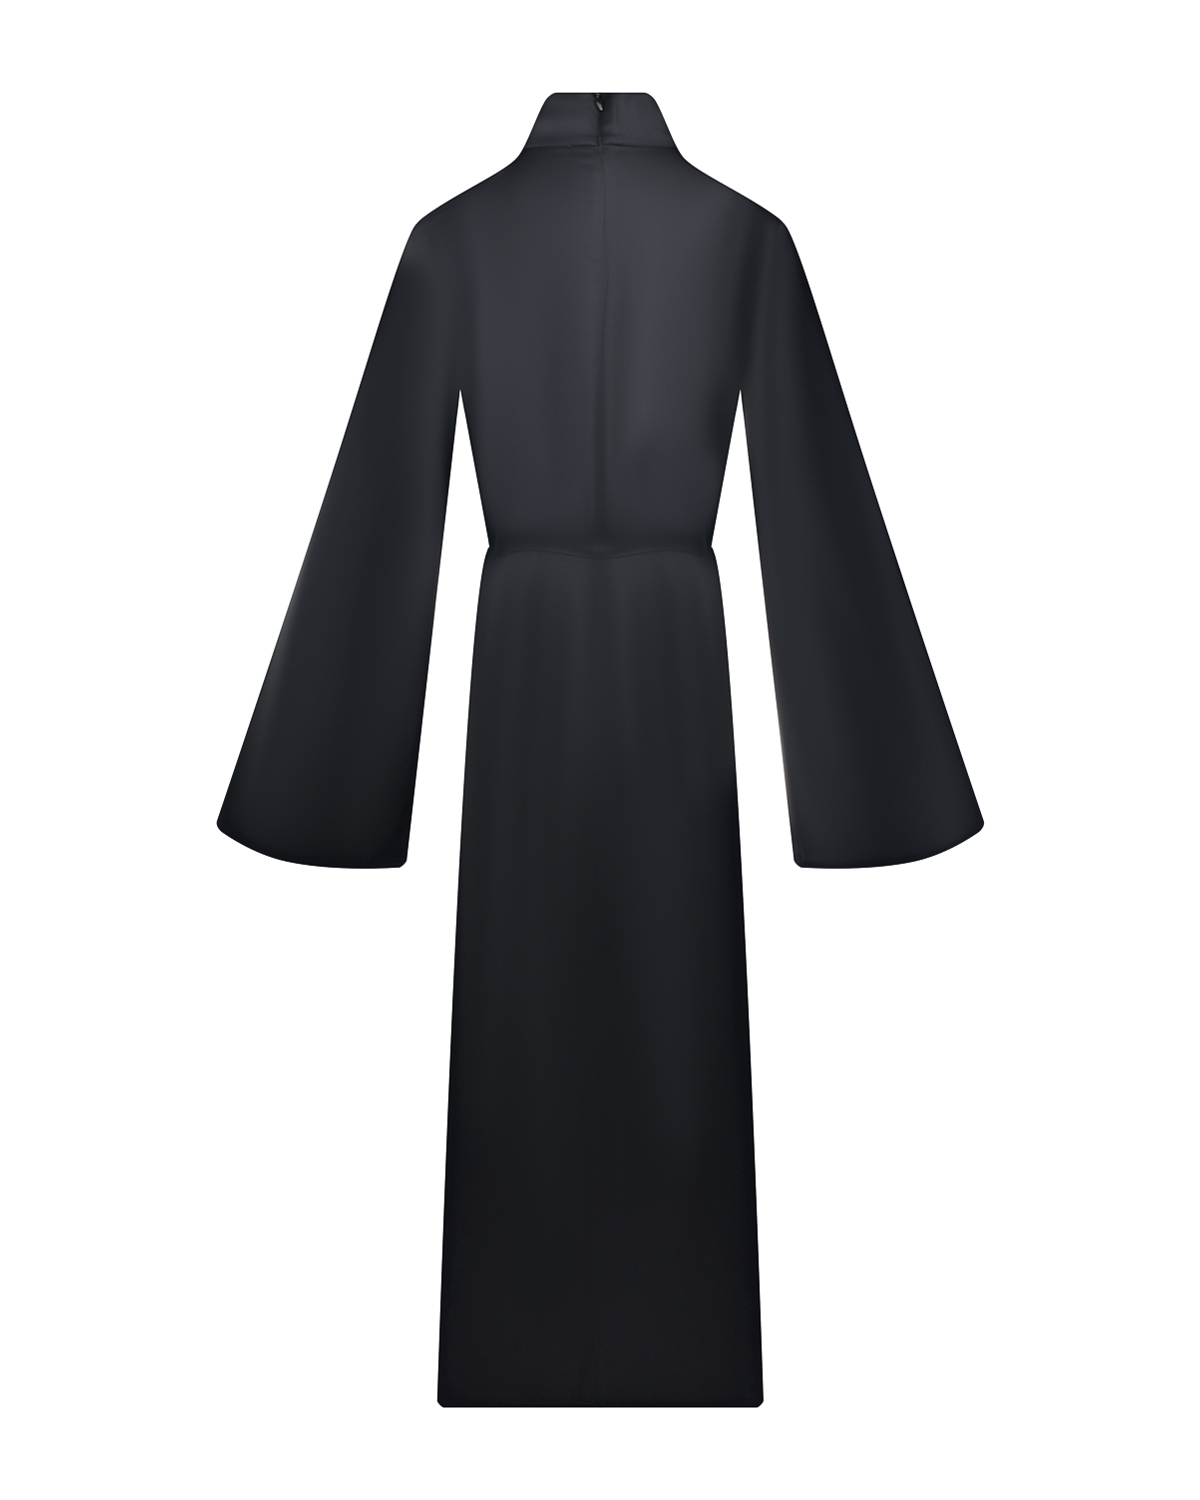 Черное платье с длинными расклешенными рукавами ROHE, размер 44, цвет черный - фото 5